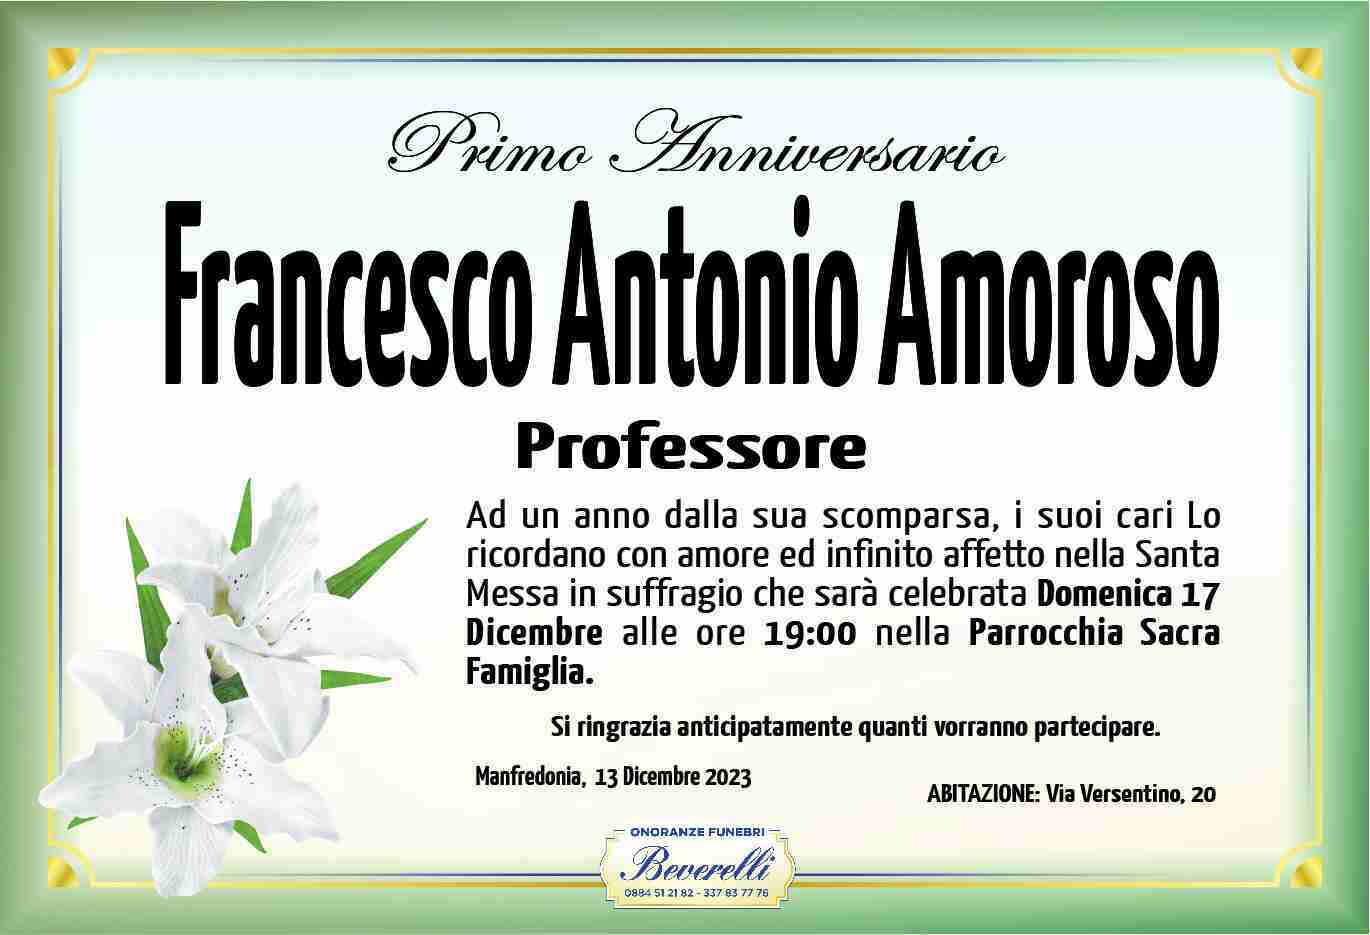 Francesco Antonio Amoroso